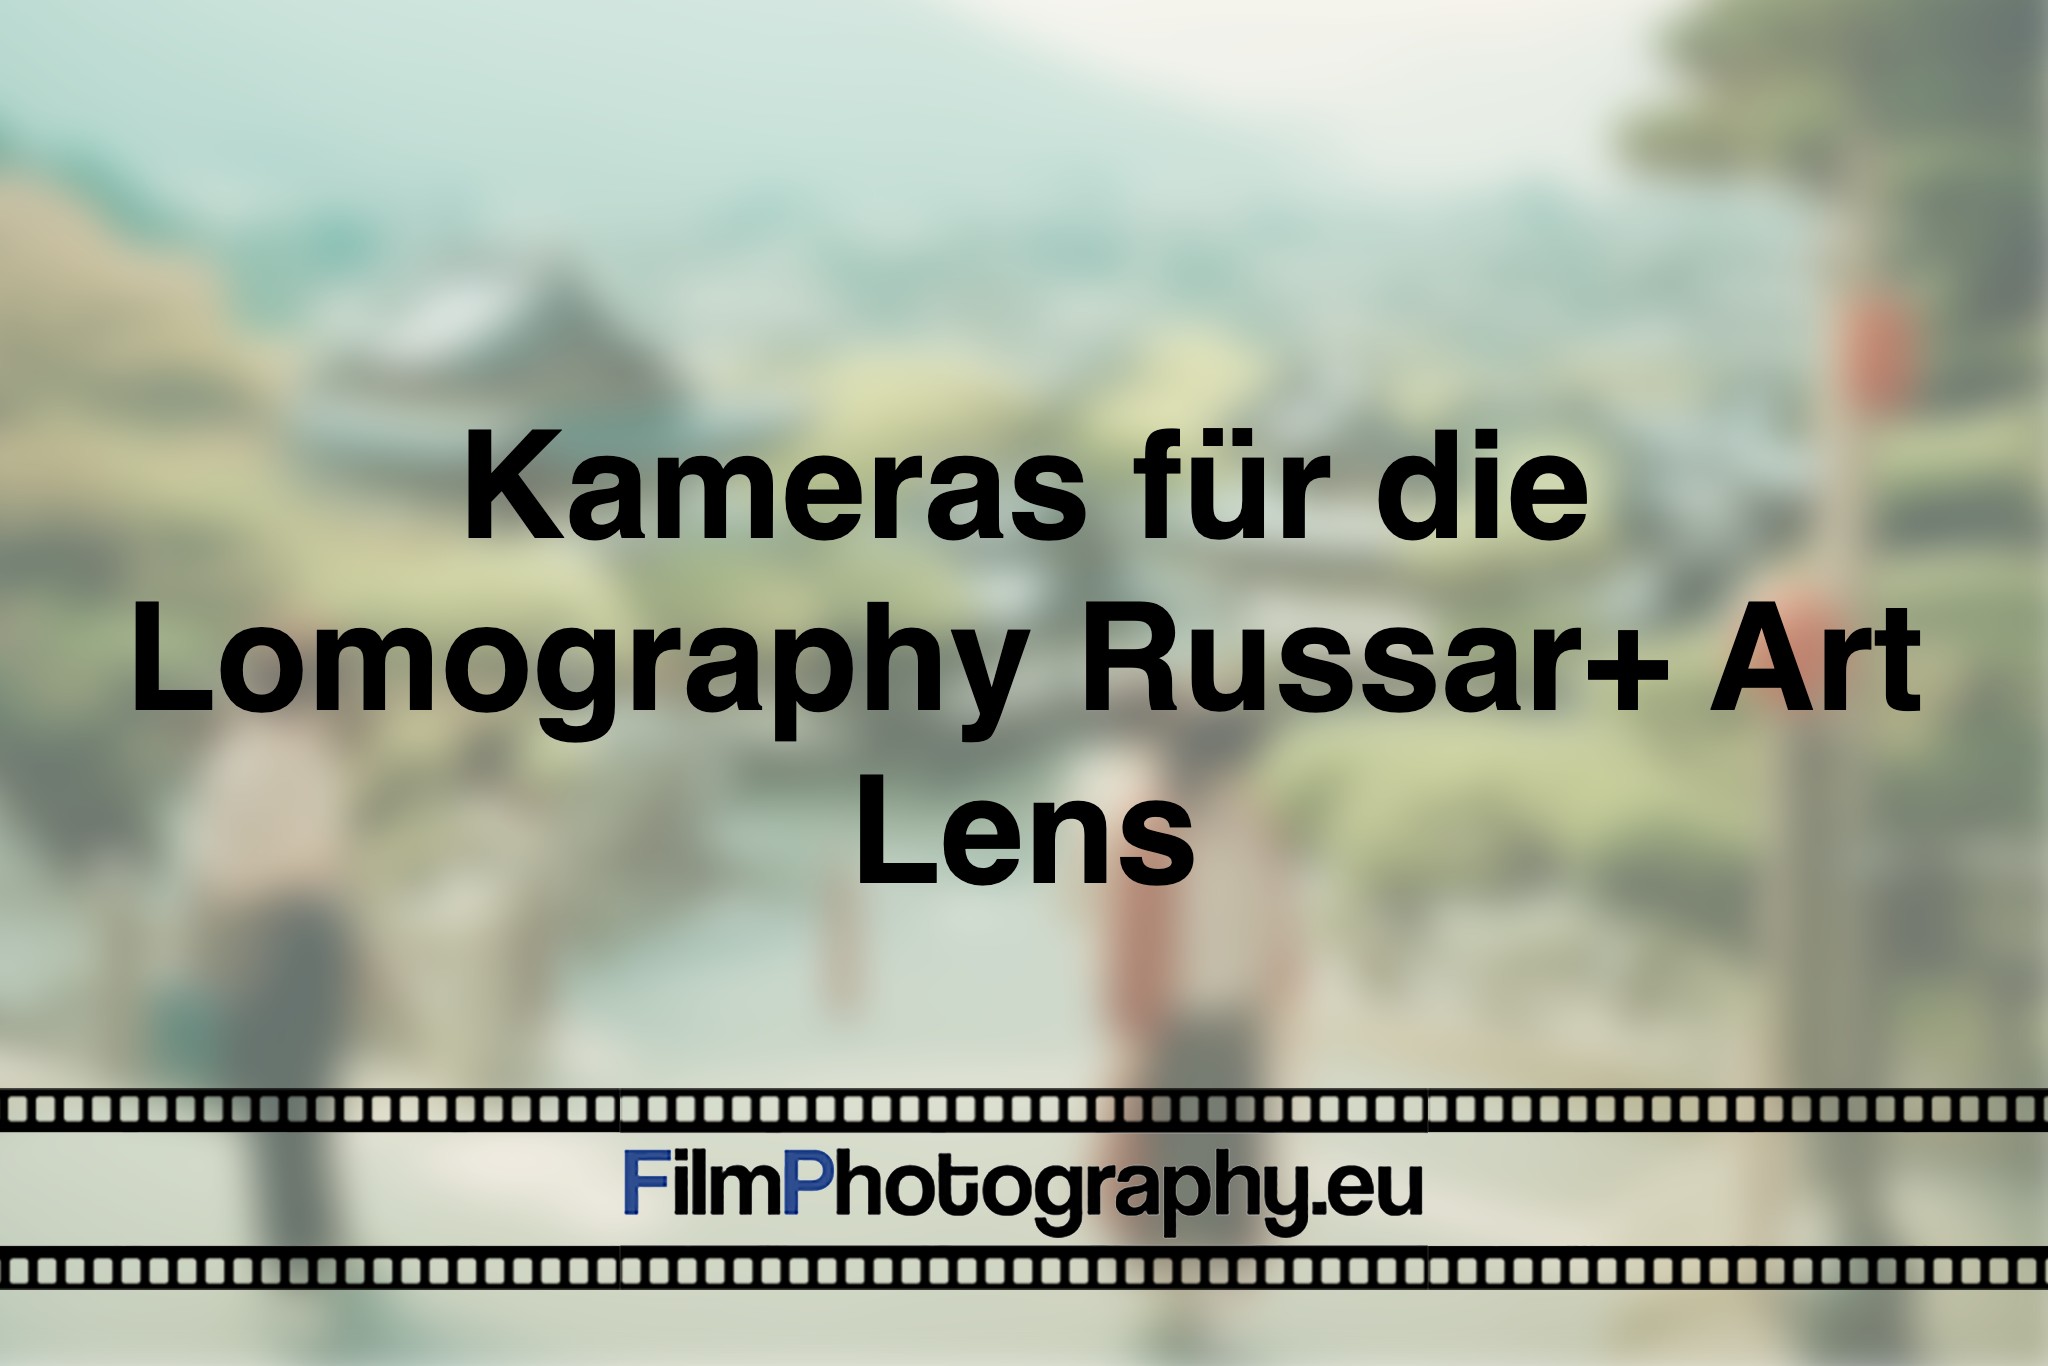 kameras-fuer-die-lomography-russar-art-lens-photo-bnv